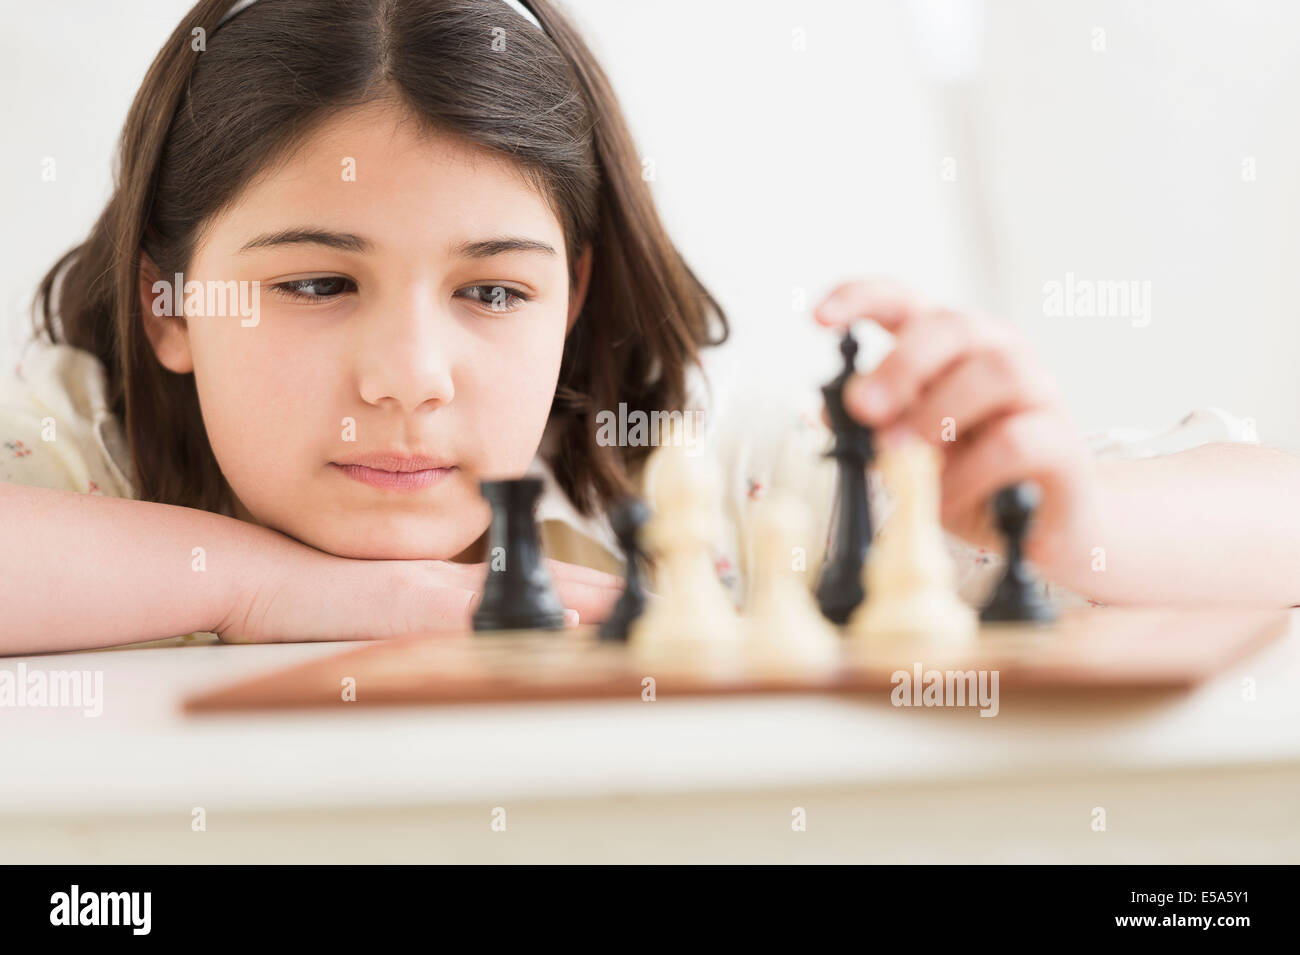 Hispanic girl playing chess Stock Photo